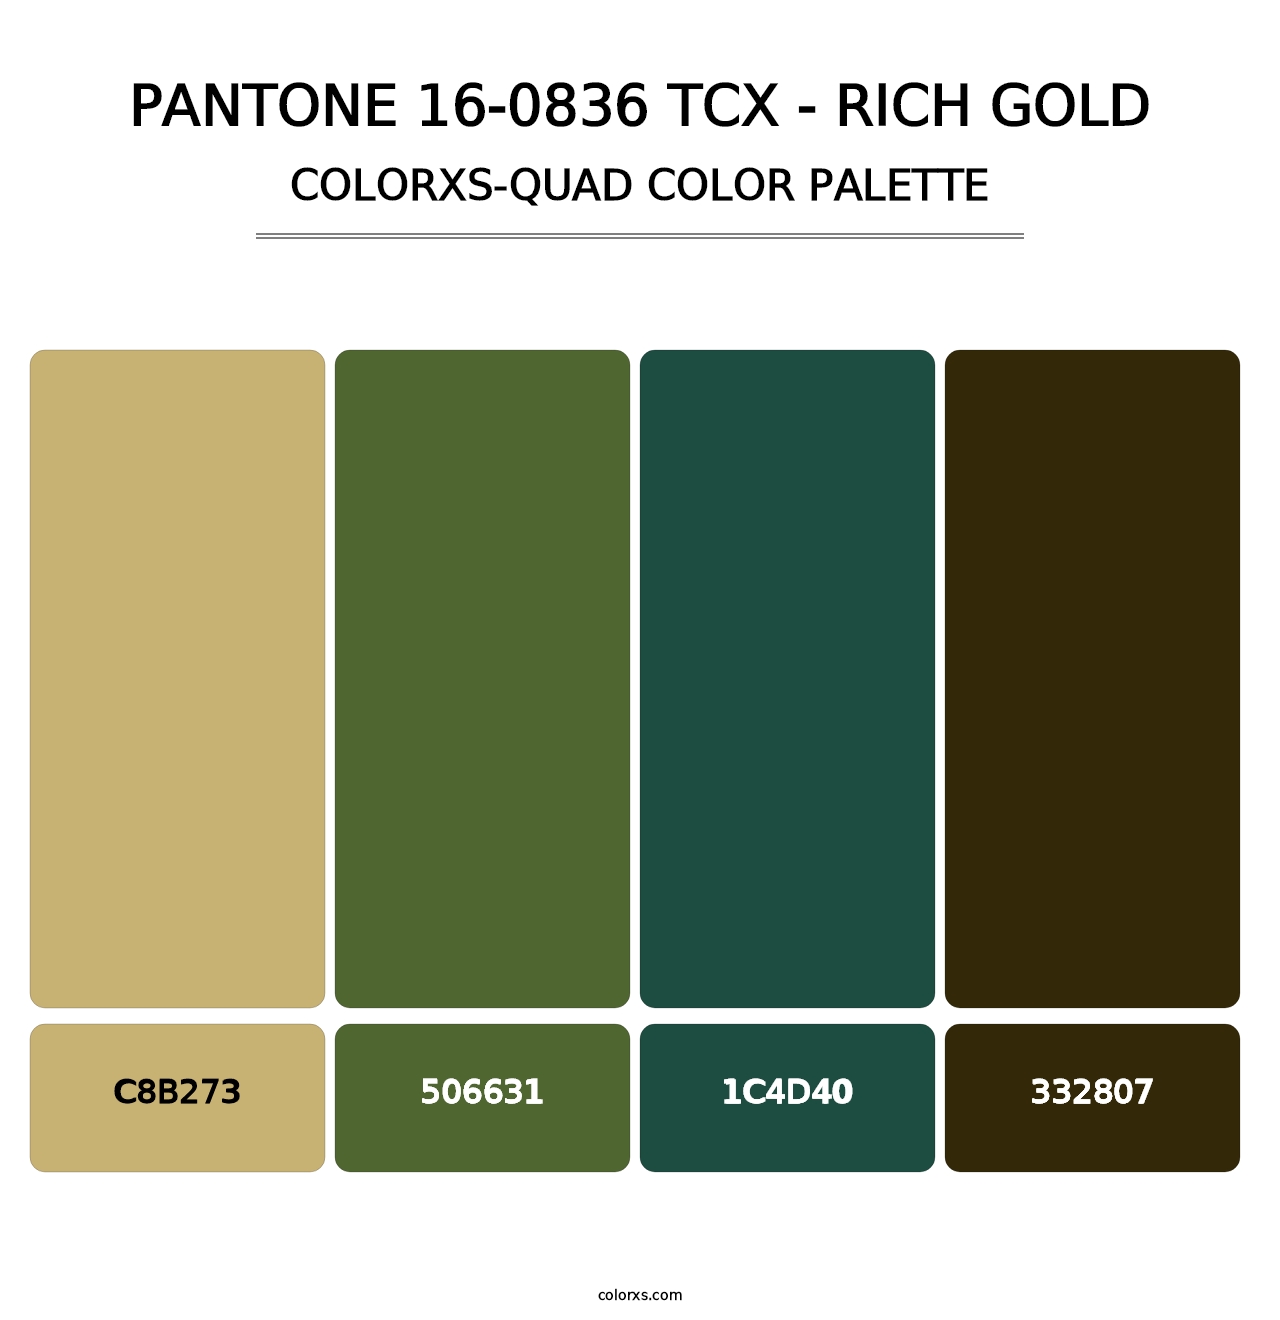 PANTONE 16-0836 TCX - Rich Gold - Colorxs Quad Palette